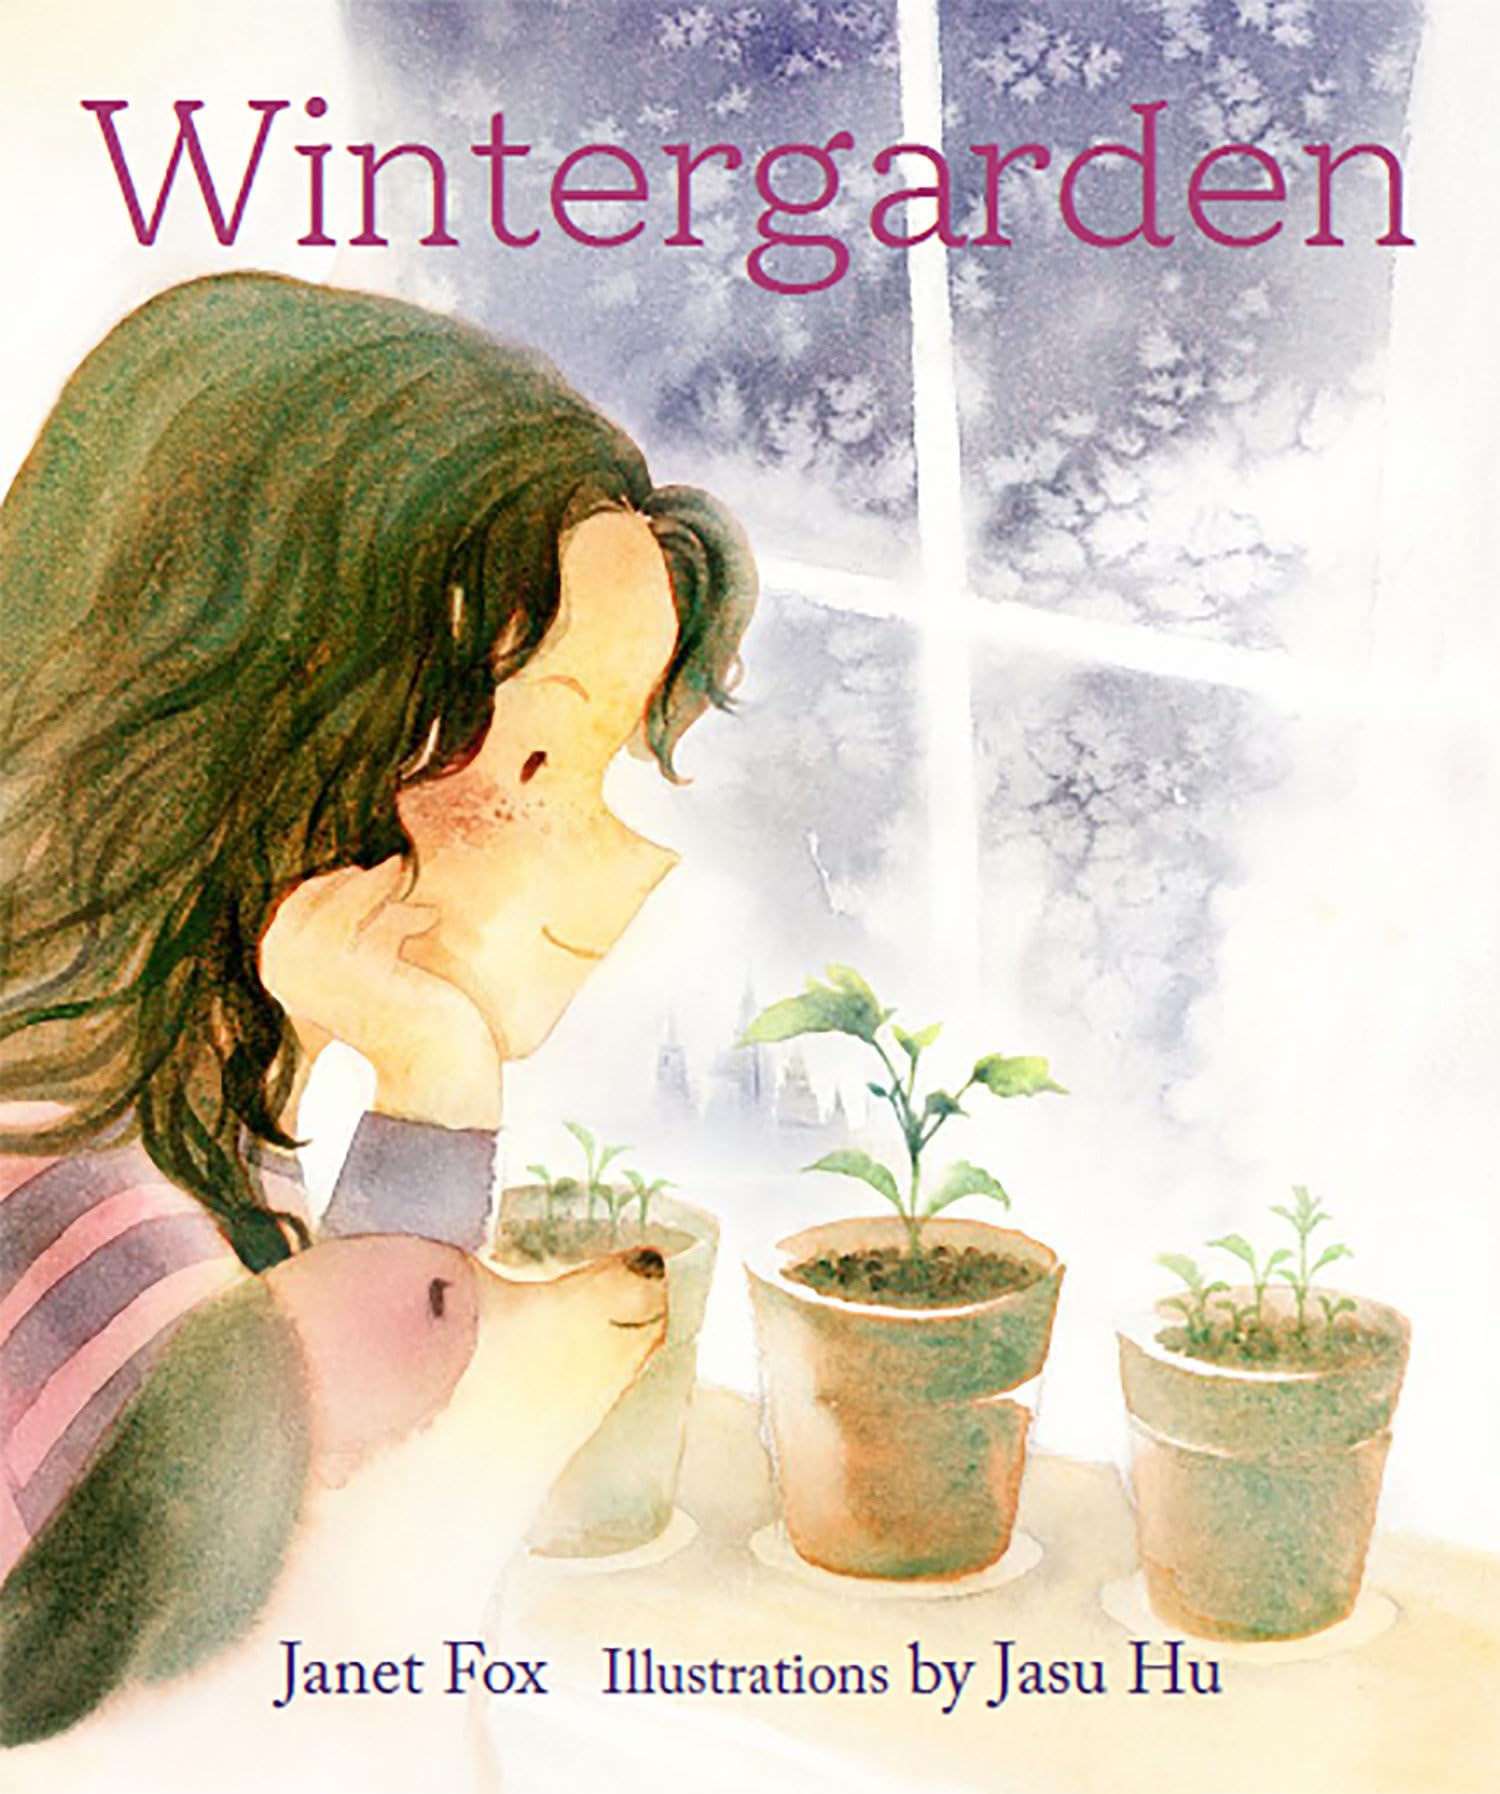 Wintergarden book cover